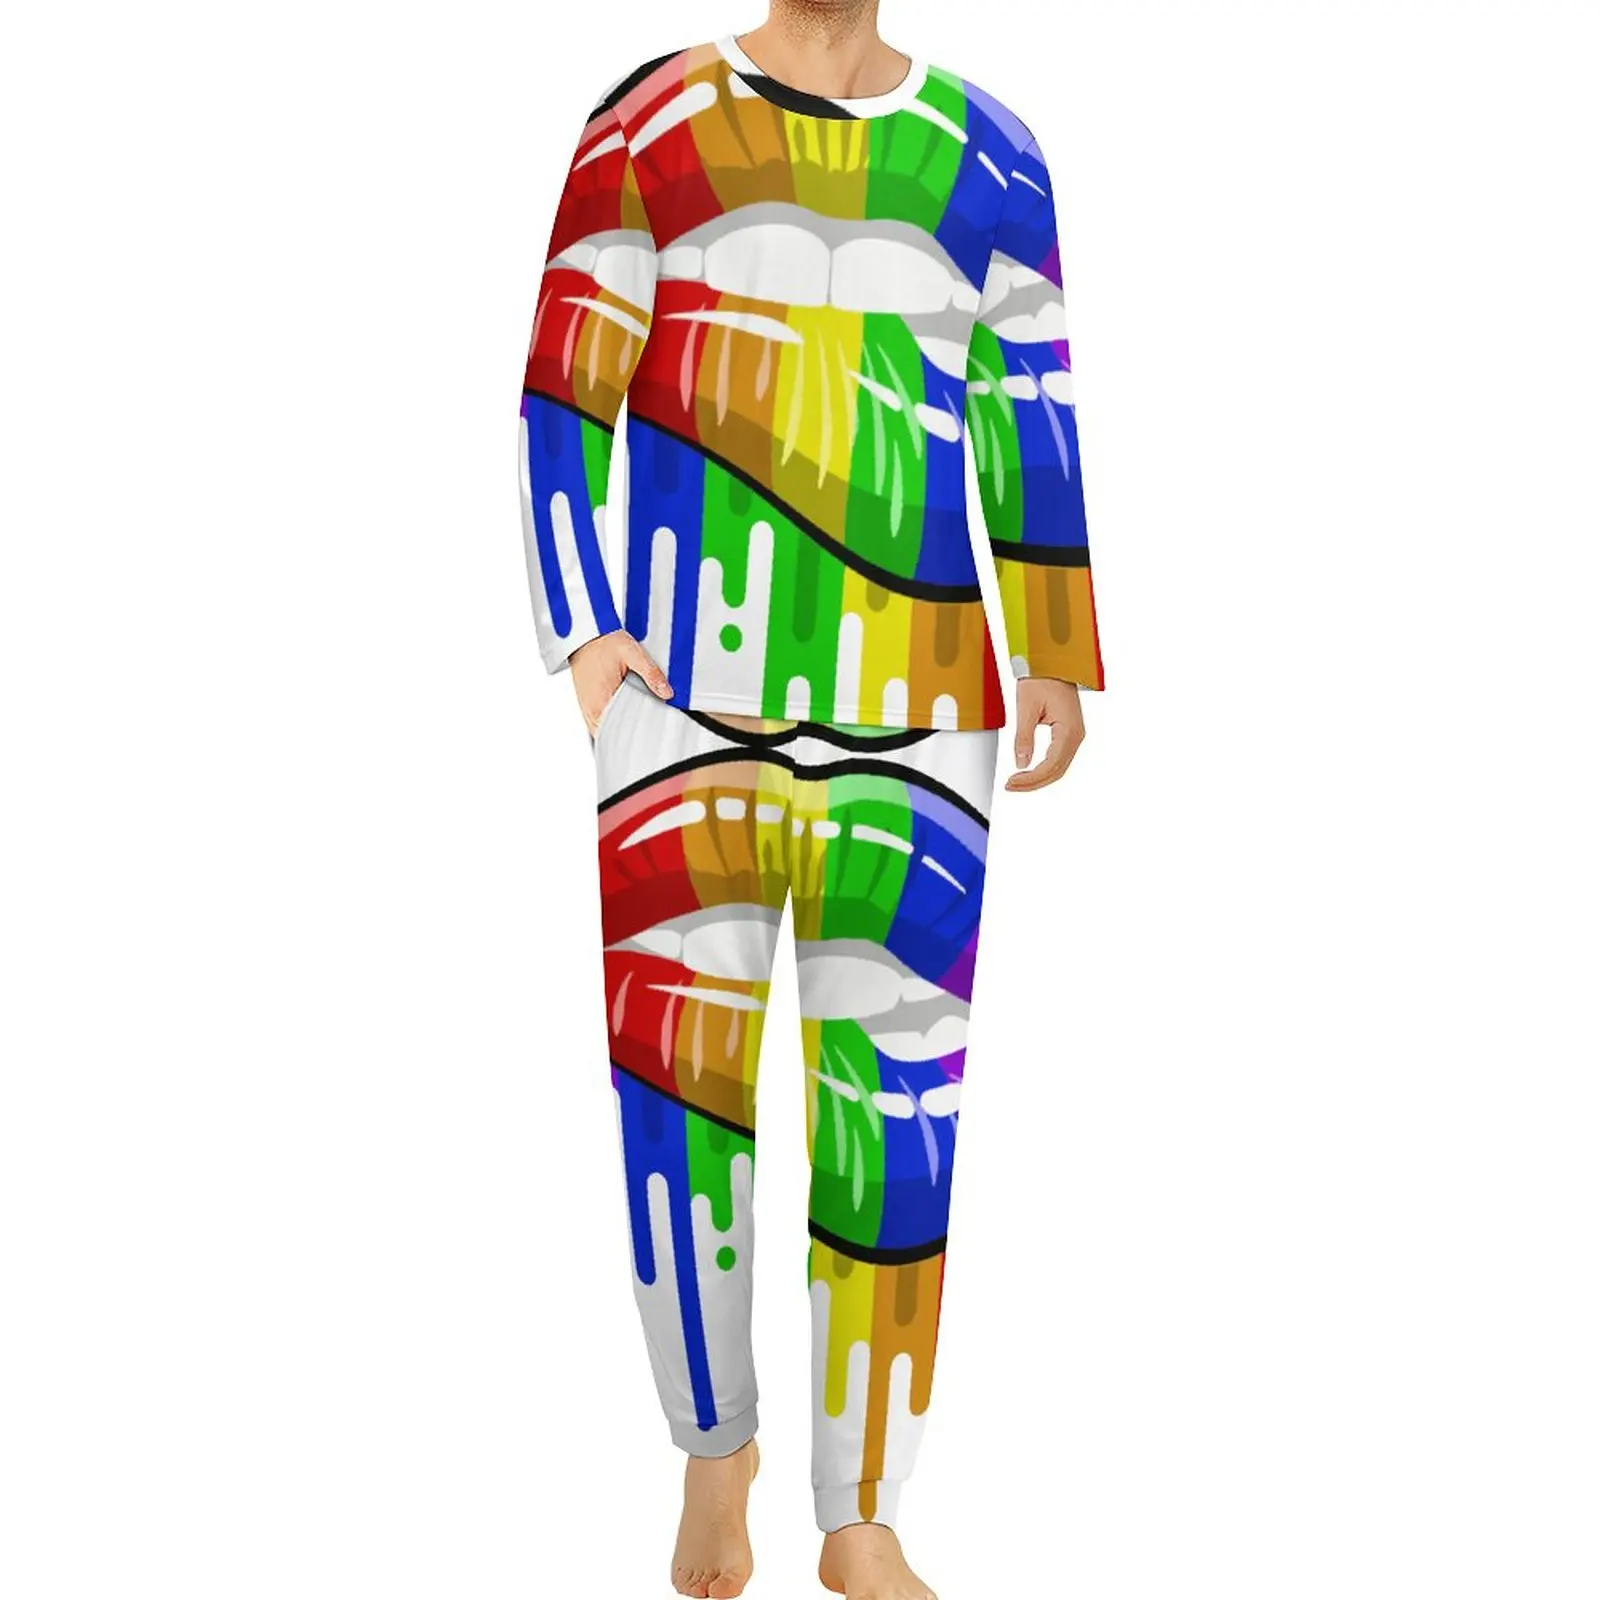 

ЛГБТ губы в Радужном флаге цвета пижамы Осень гордость сон одежда для сна мужские 2 предмета Графический длинный рукав Большие размеры пижамные комплекты